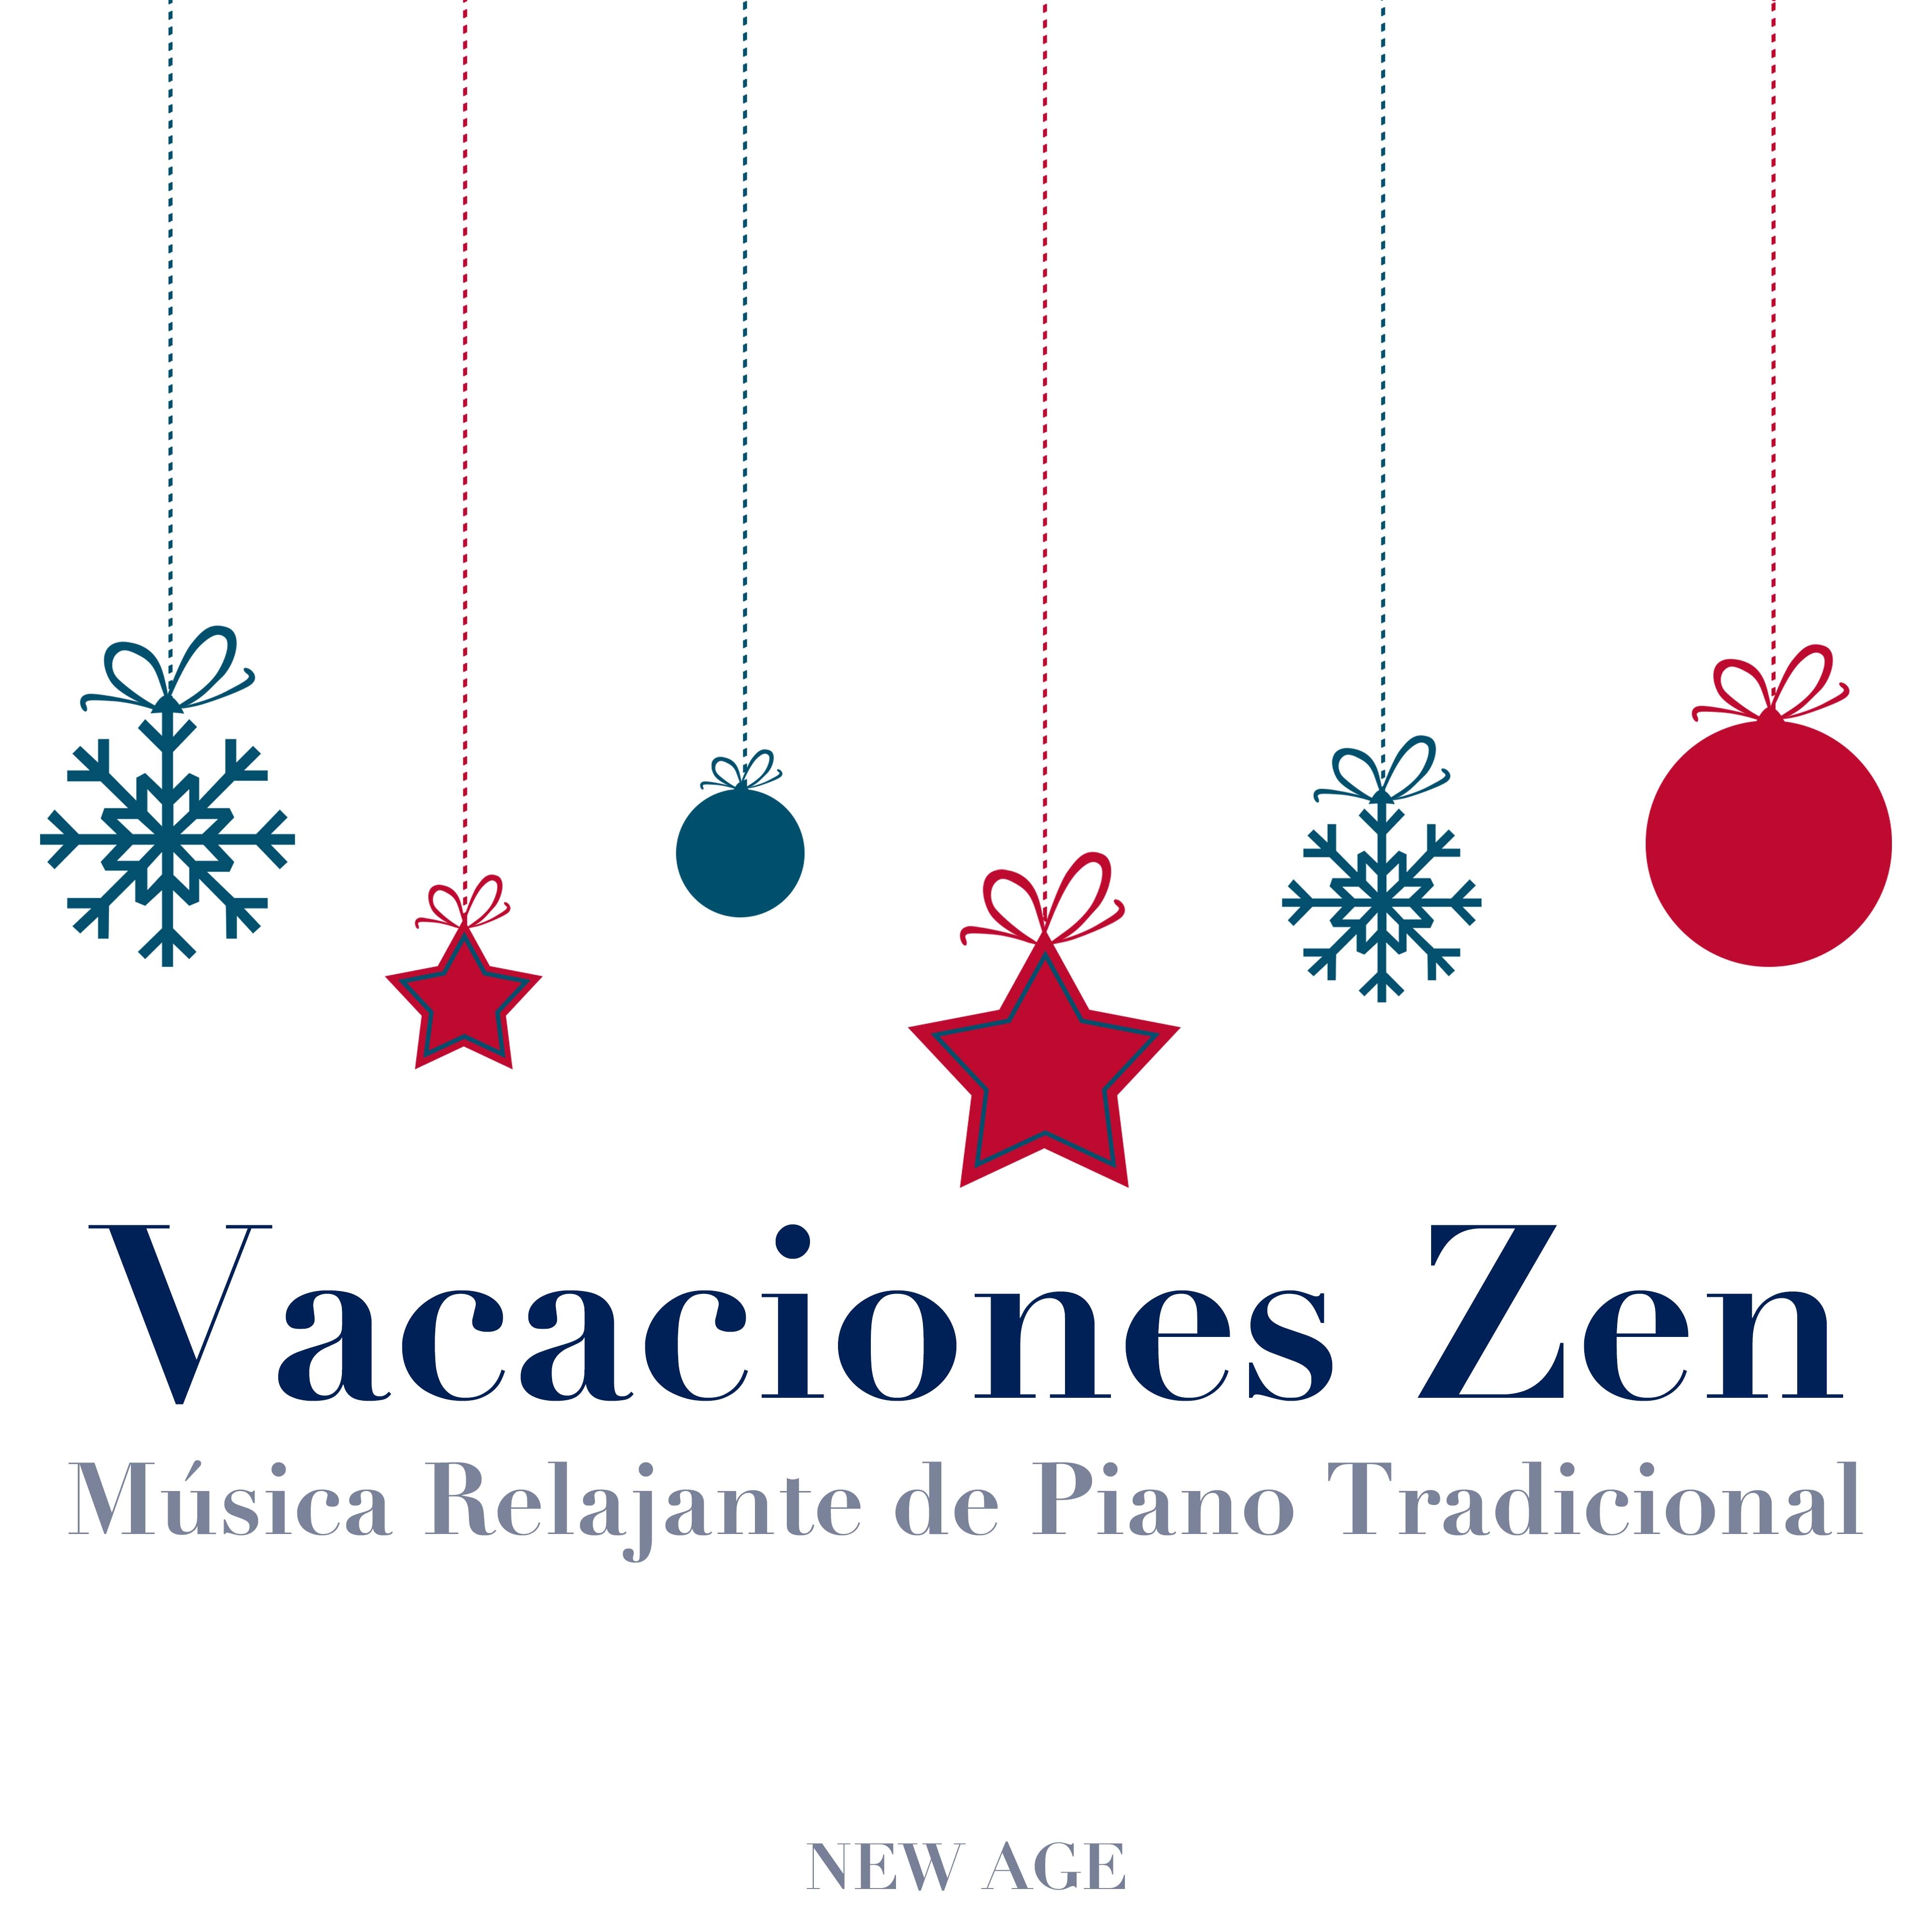 Vacaciones Zen: Mu sica Relajante de Piano Tradicional para Celebrar la Navidad y el A o Nuevo con Amigos y Familia